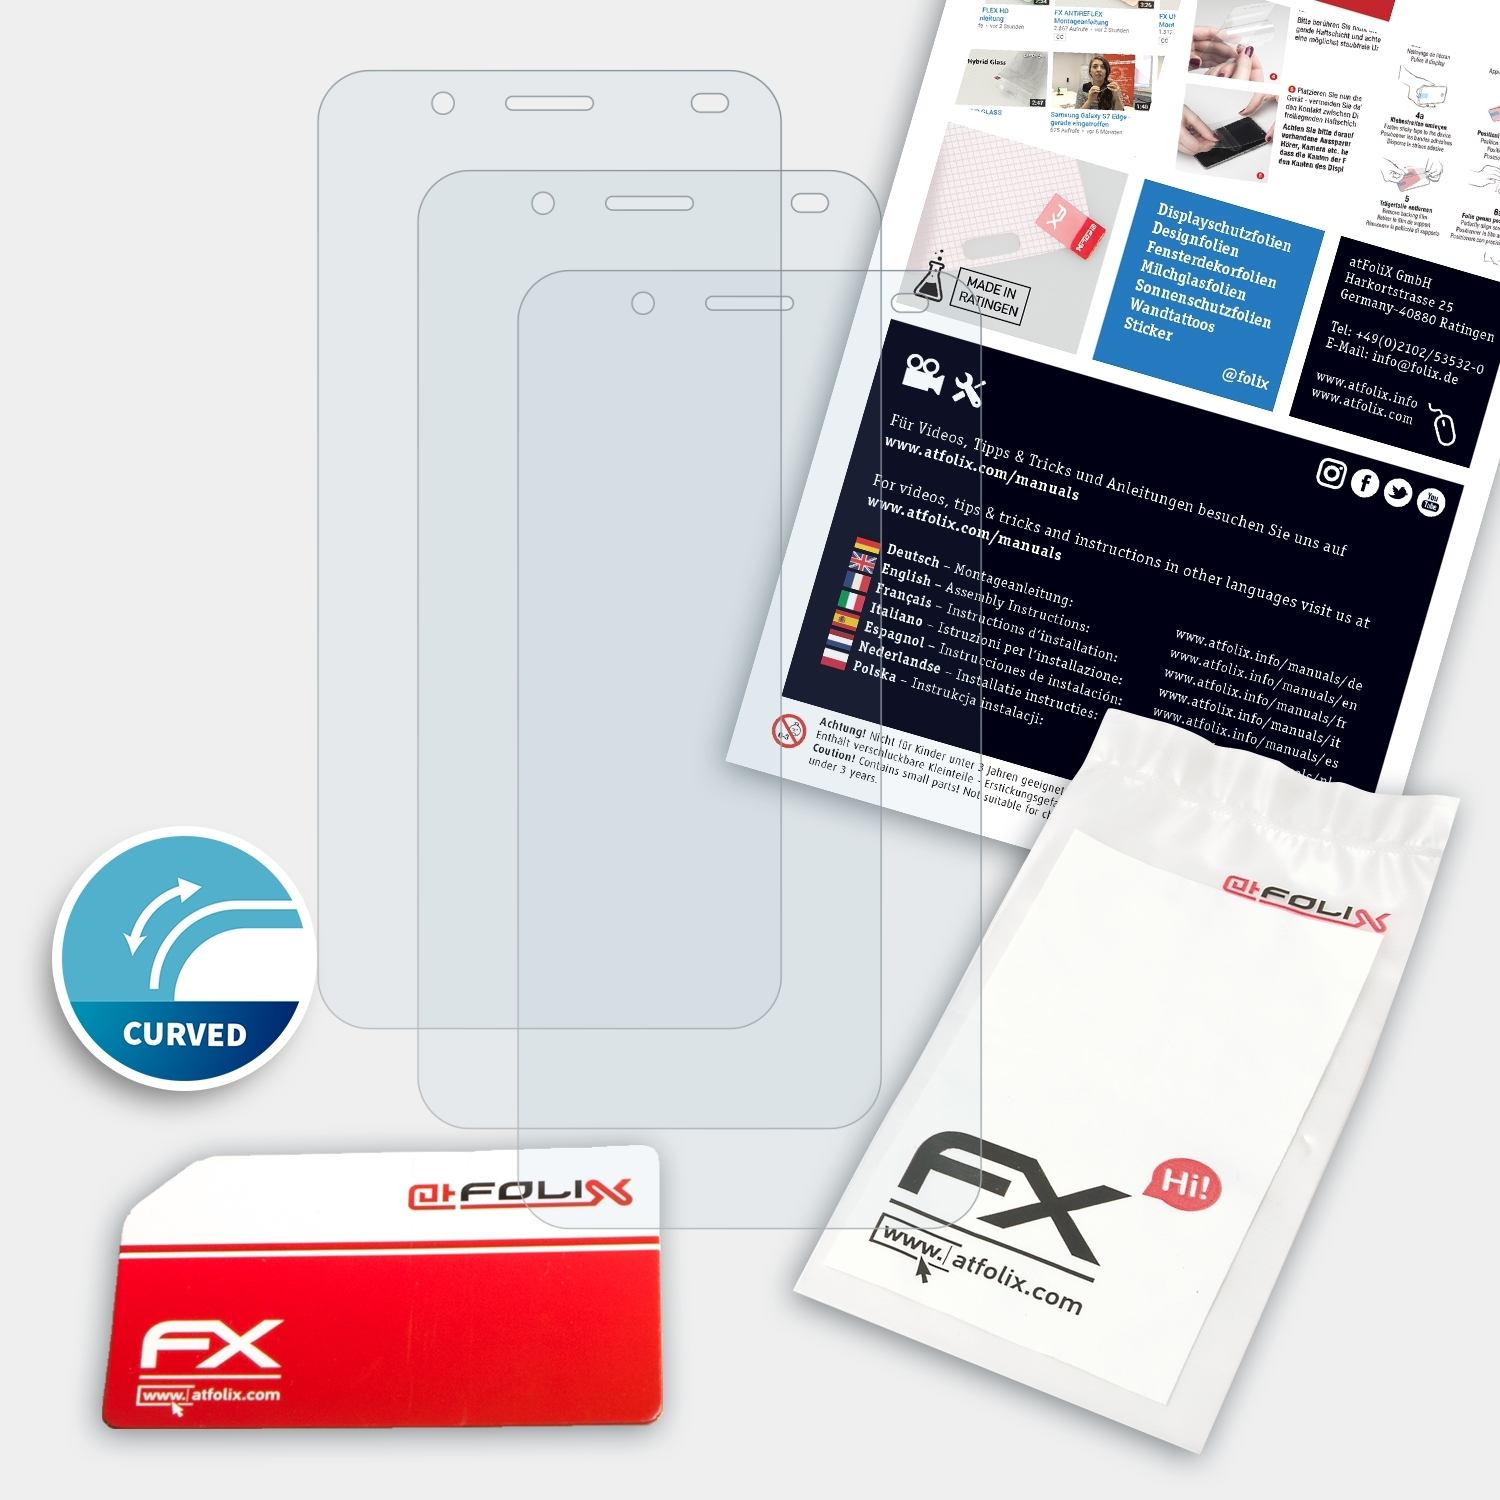 FX-ActiFleX ATFOLIX 3x Ulefone Displayschutz(für Tiger)